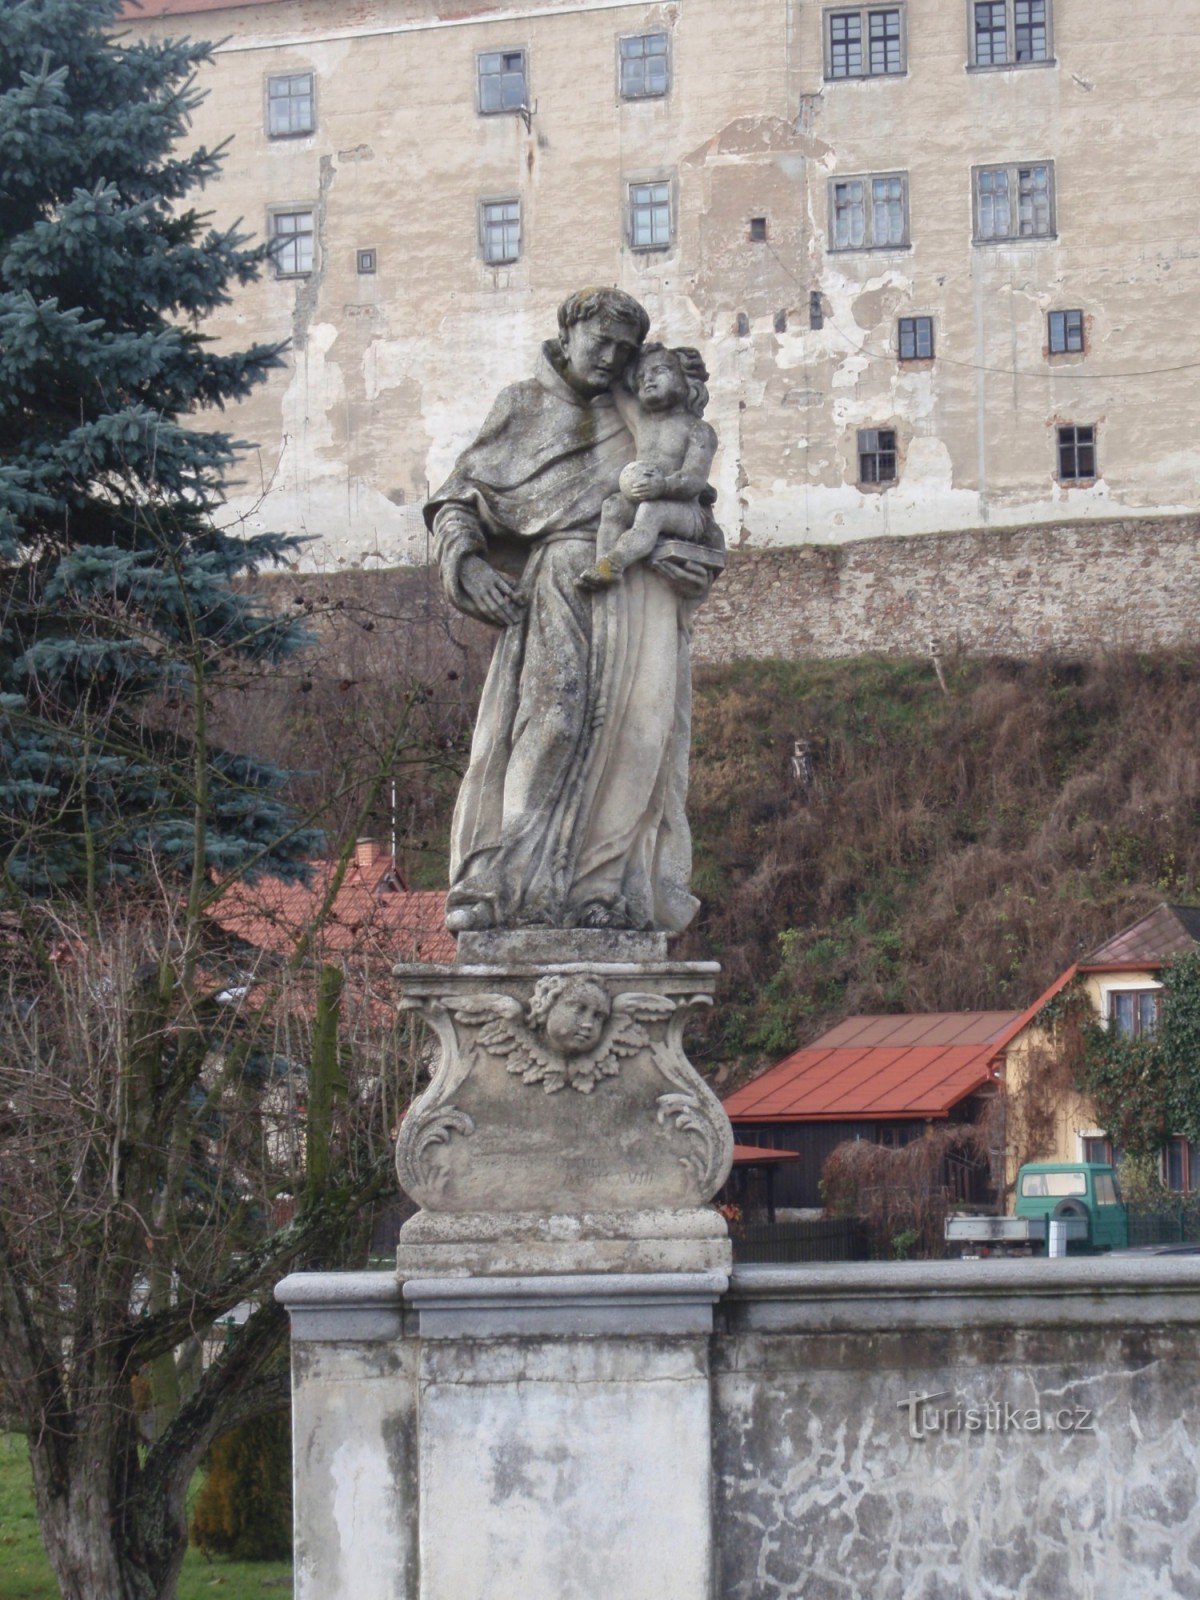 St. Antonin de Padoue